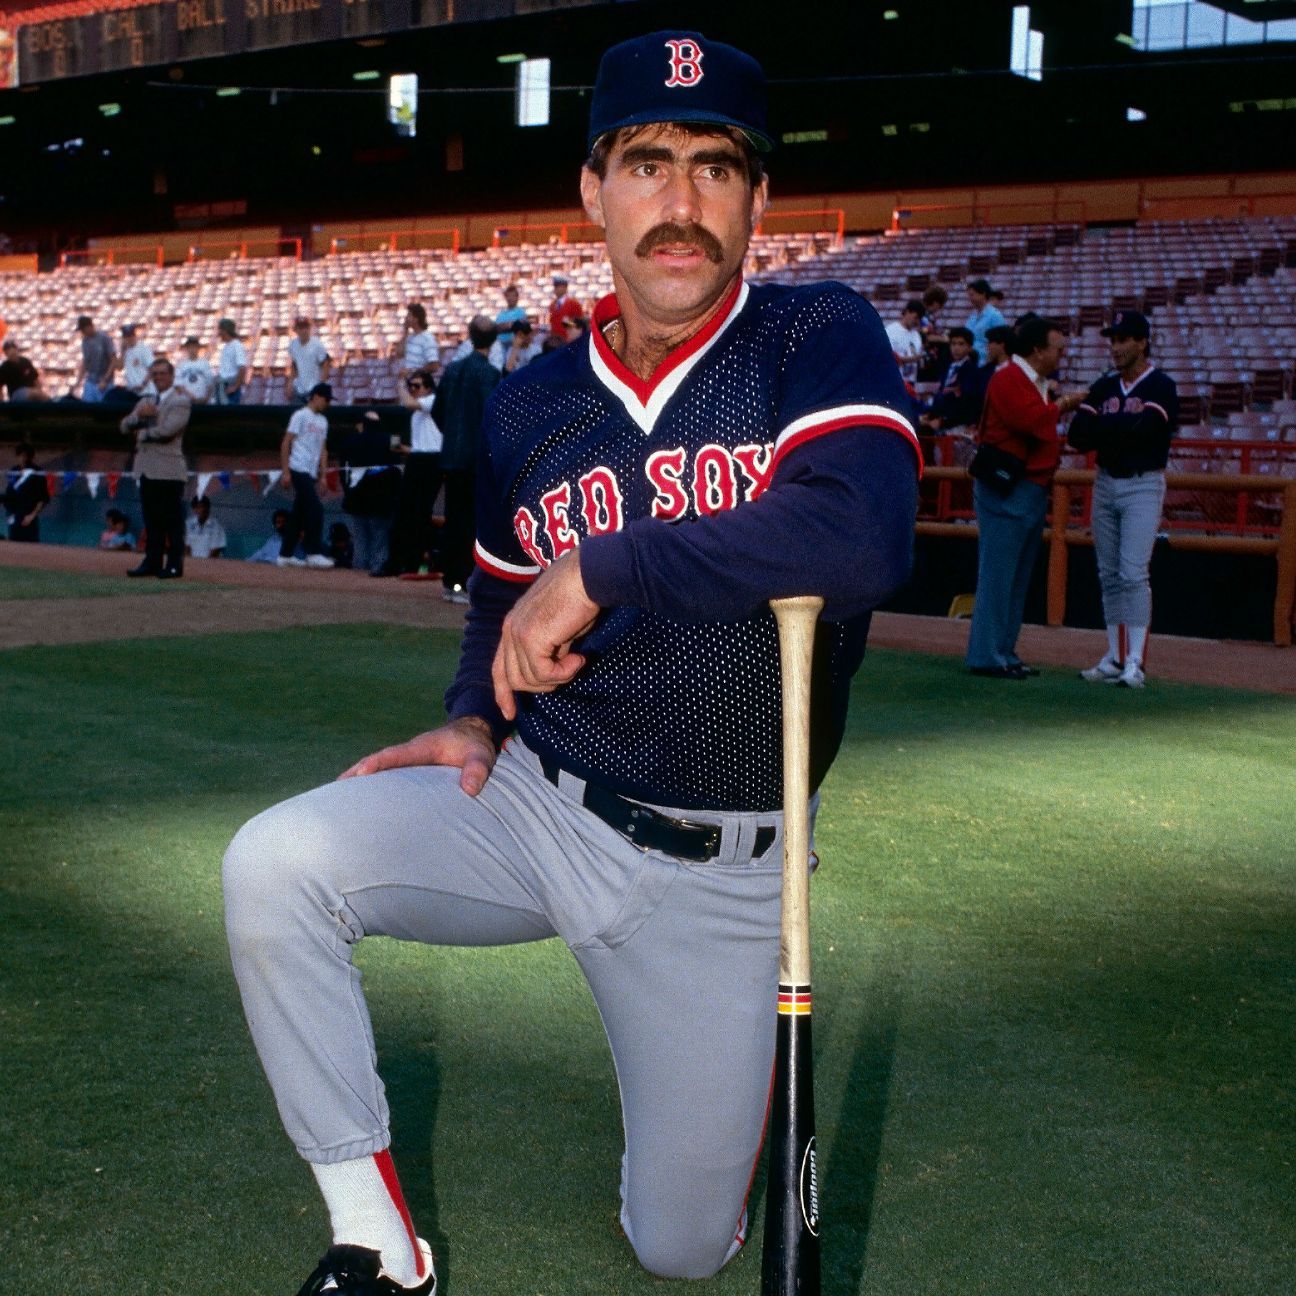 Bill Buckner Jersey - Boston Red Sox 1990 Away MLB Baseball